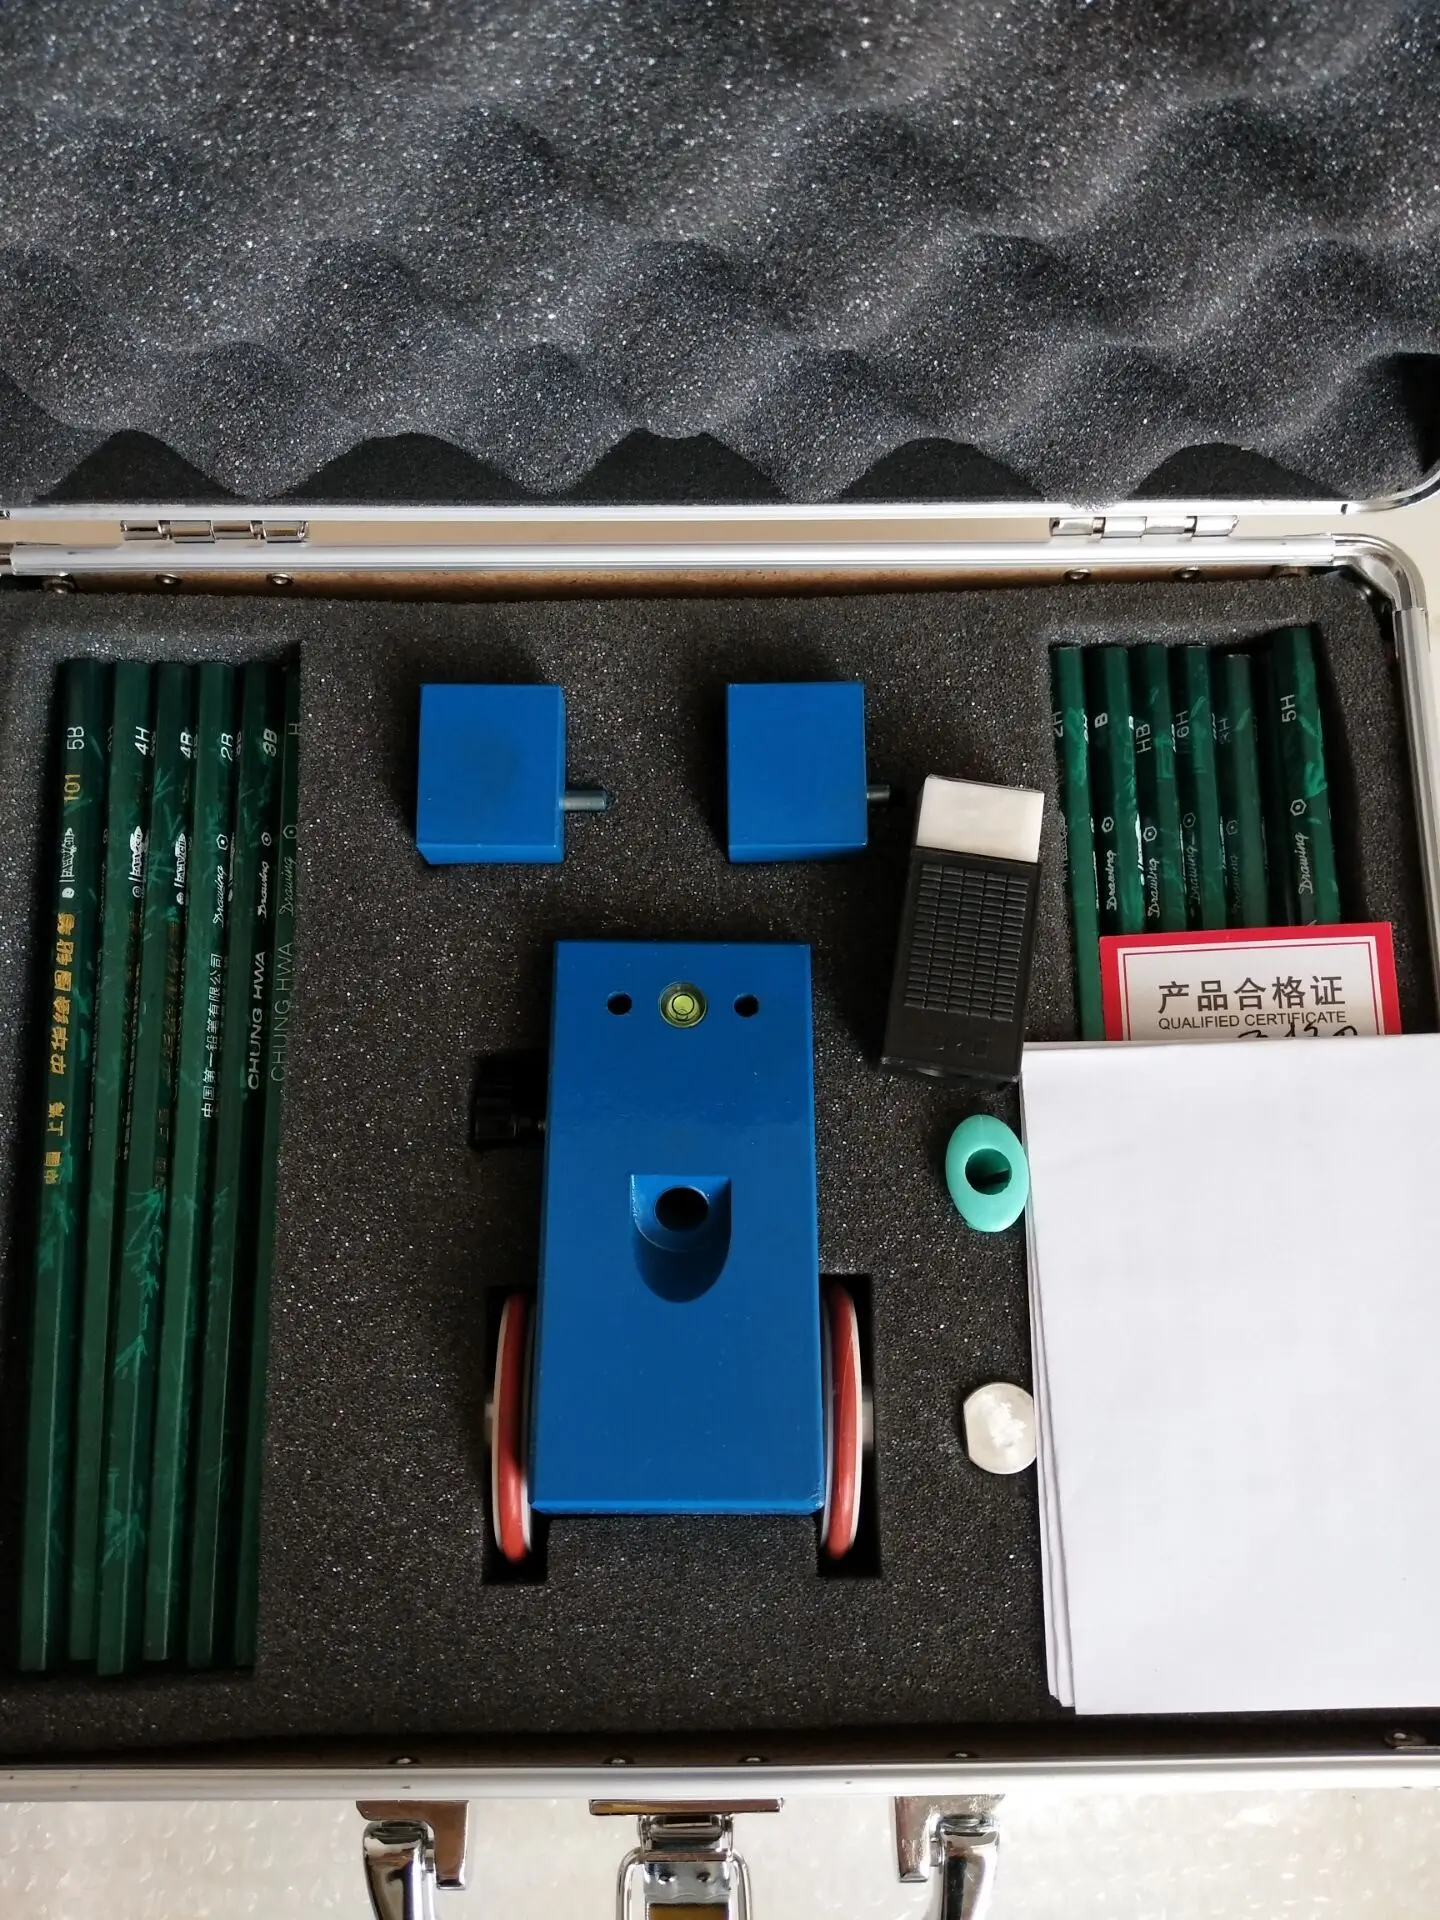 

Измеритель Твердости карандаша 500g750g1000g, устройство для измерения твердости покрытия, прибор для проверки царапин